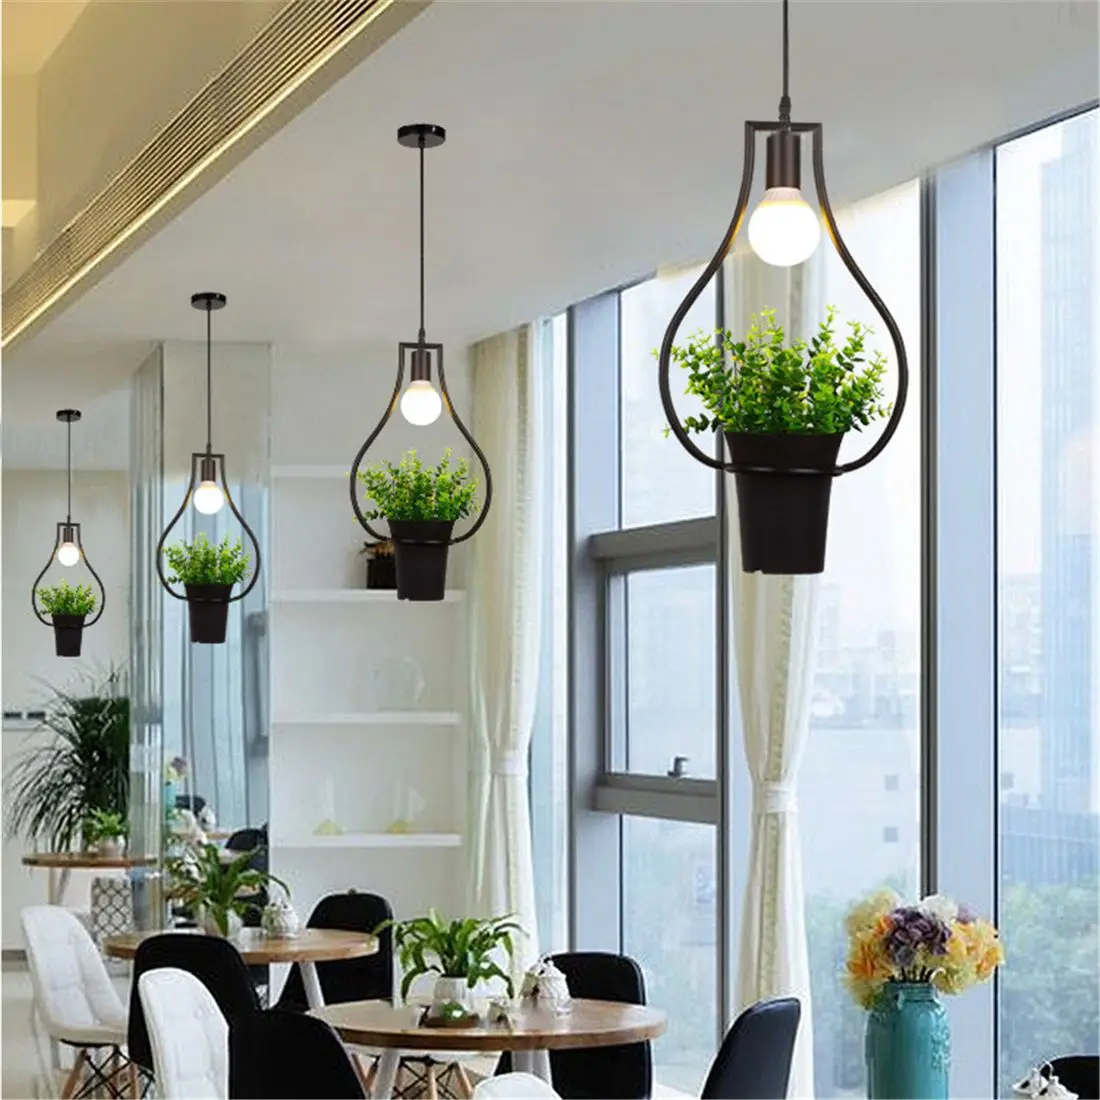 Черные вазы зеленые растения Подвесные лампы Ретро промышленный стиль Творческая личность люстра магазин одежды кафе